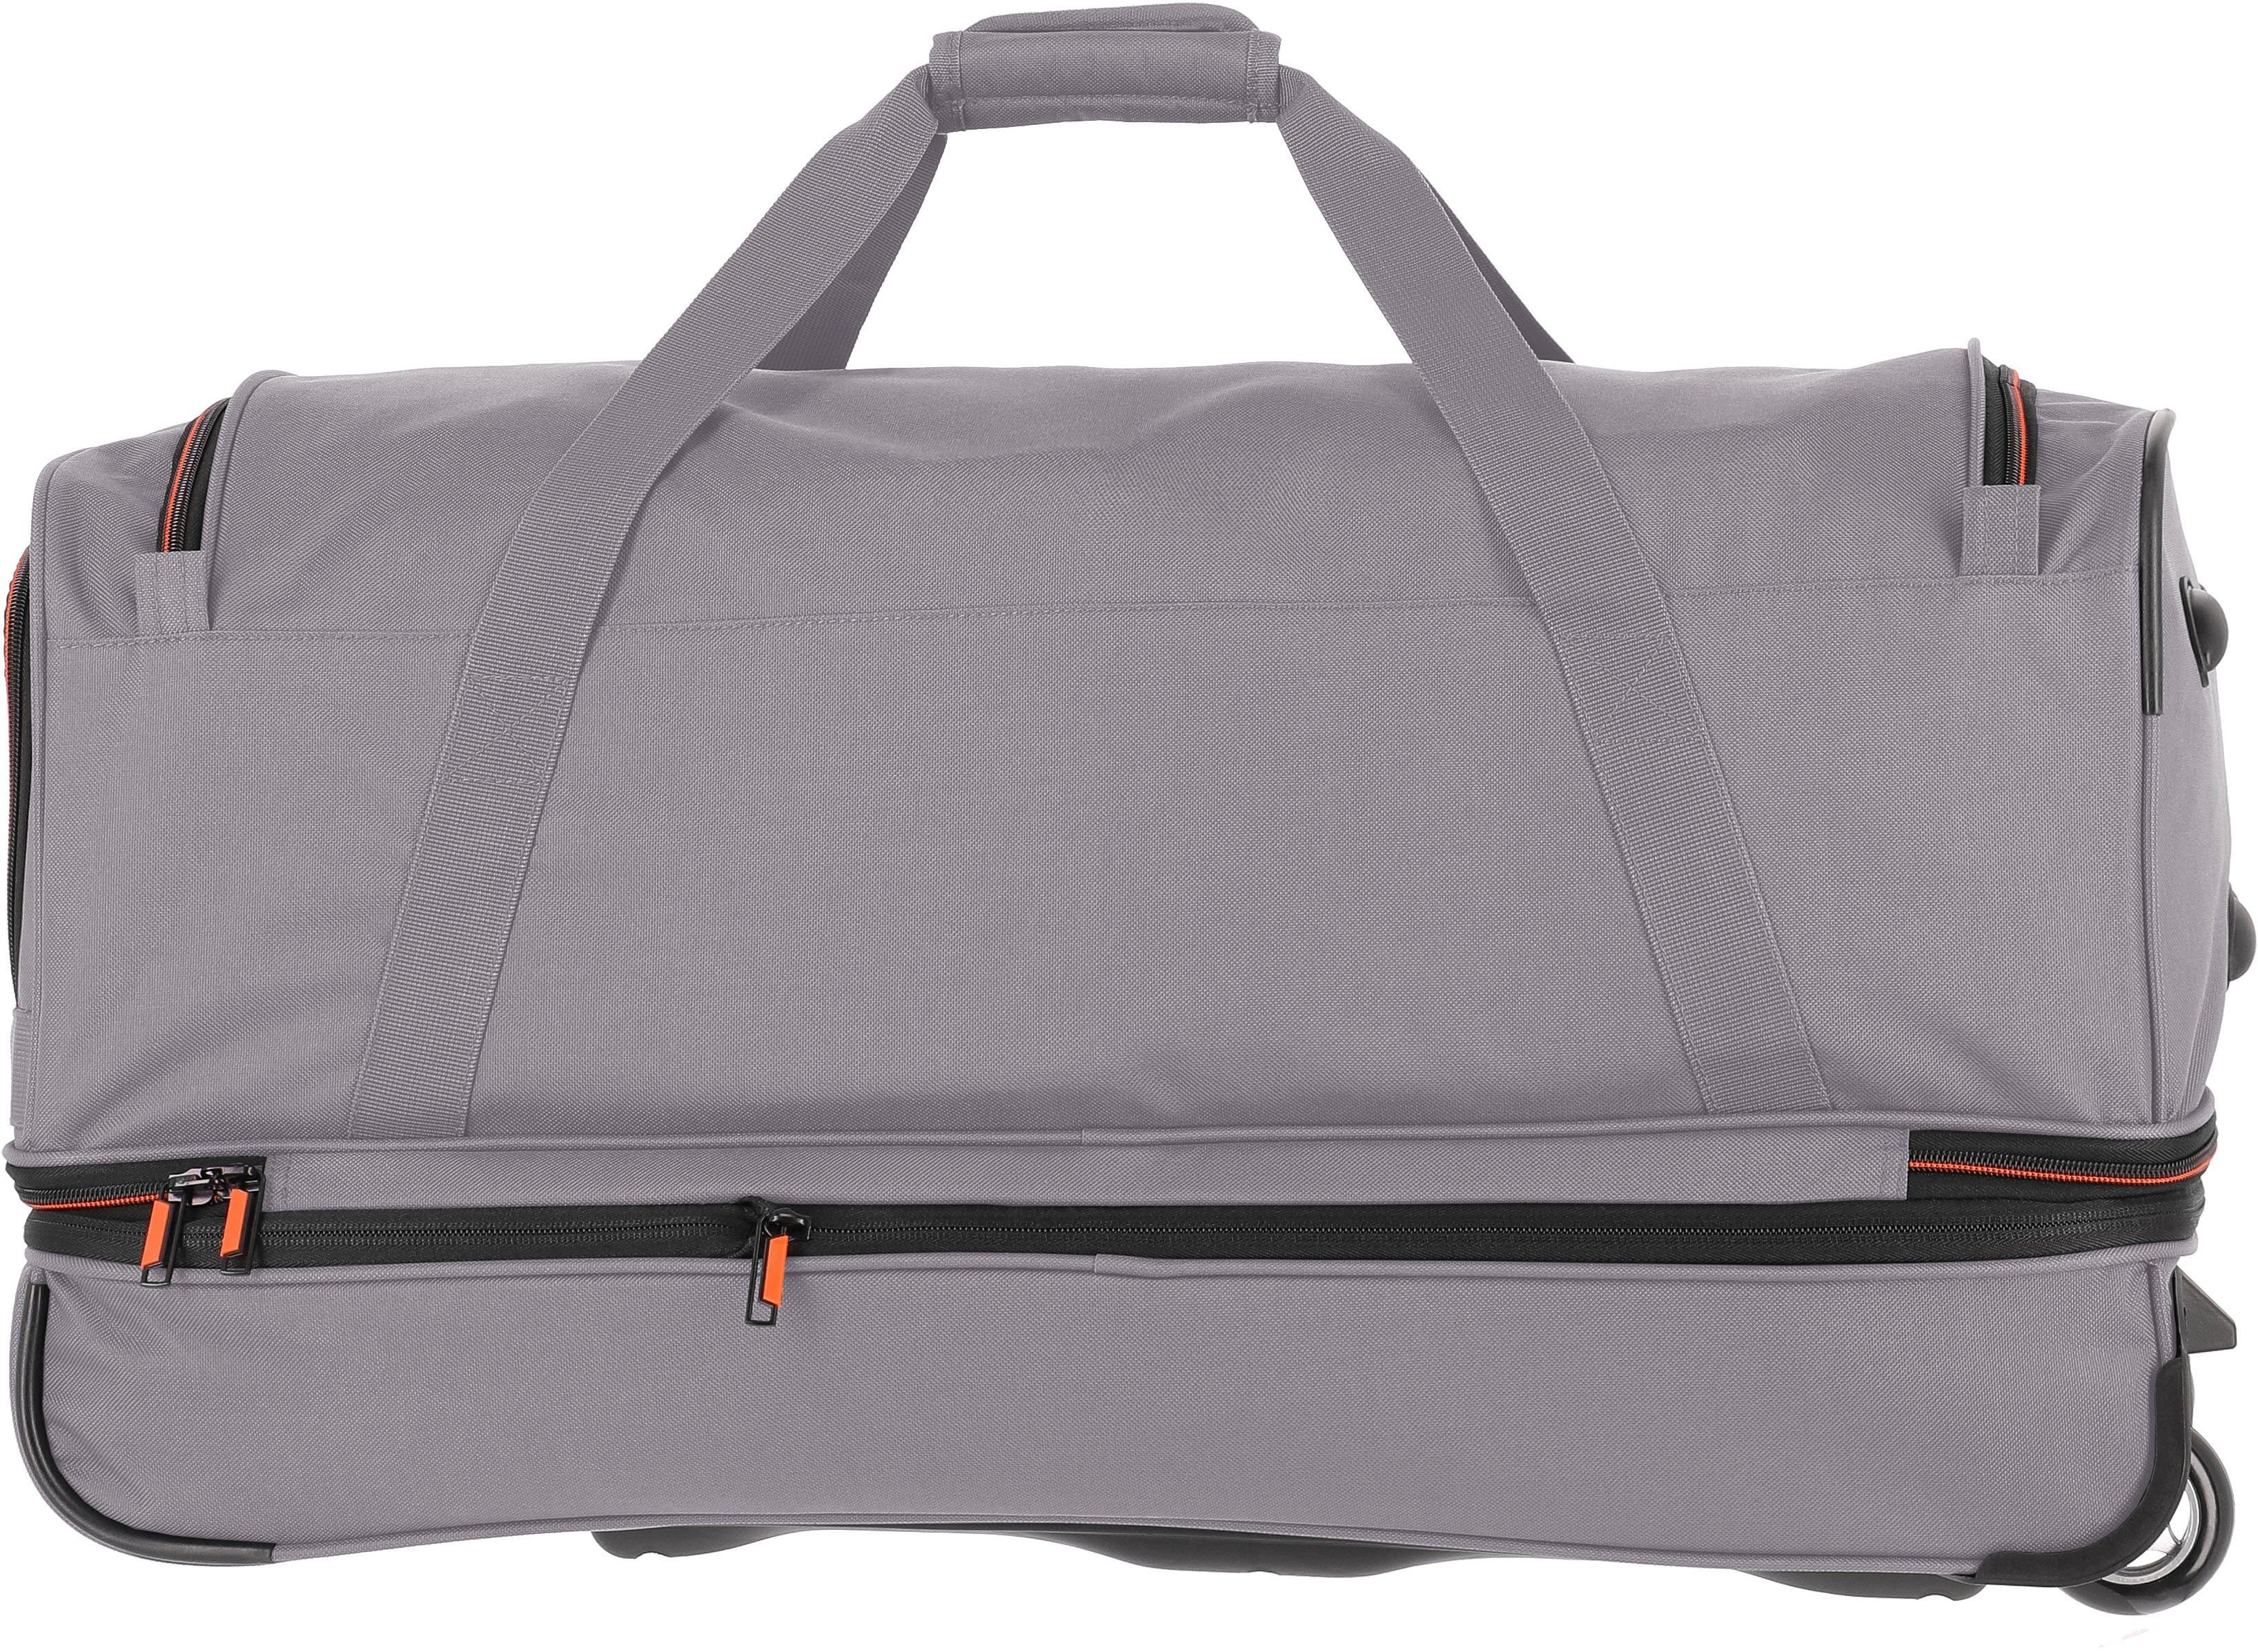 travelite Reisetasche Trolleyfunktion mit Basics, cm, und Volumenerweiterung grau/orange, 70